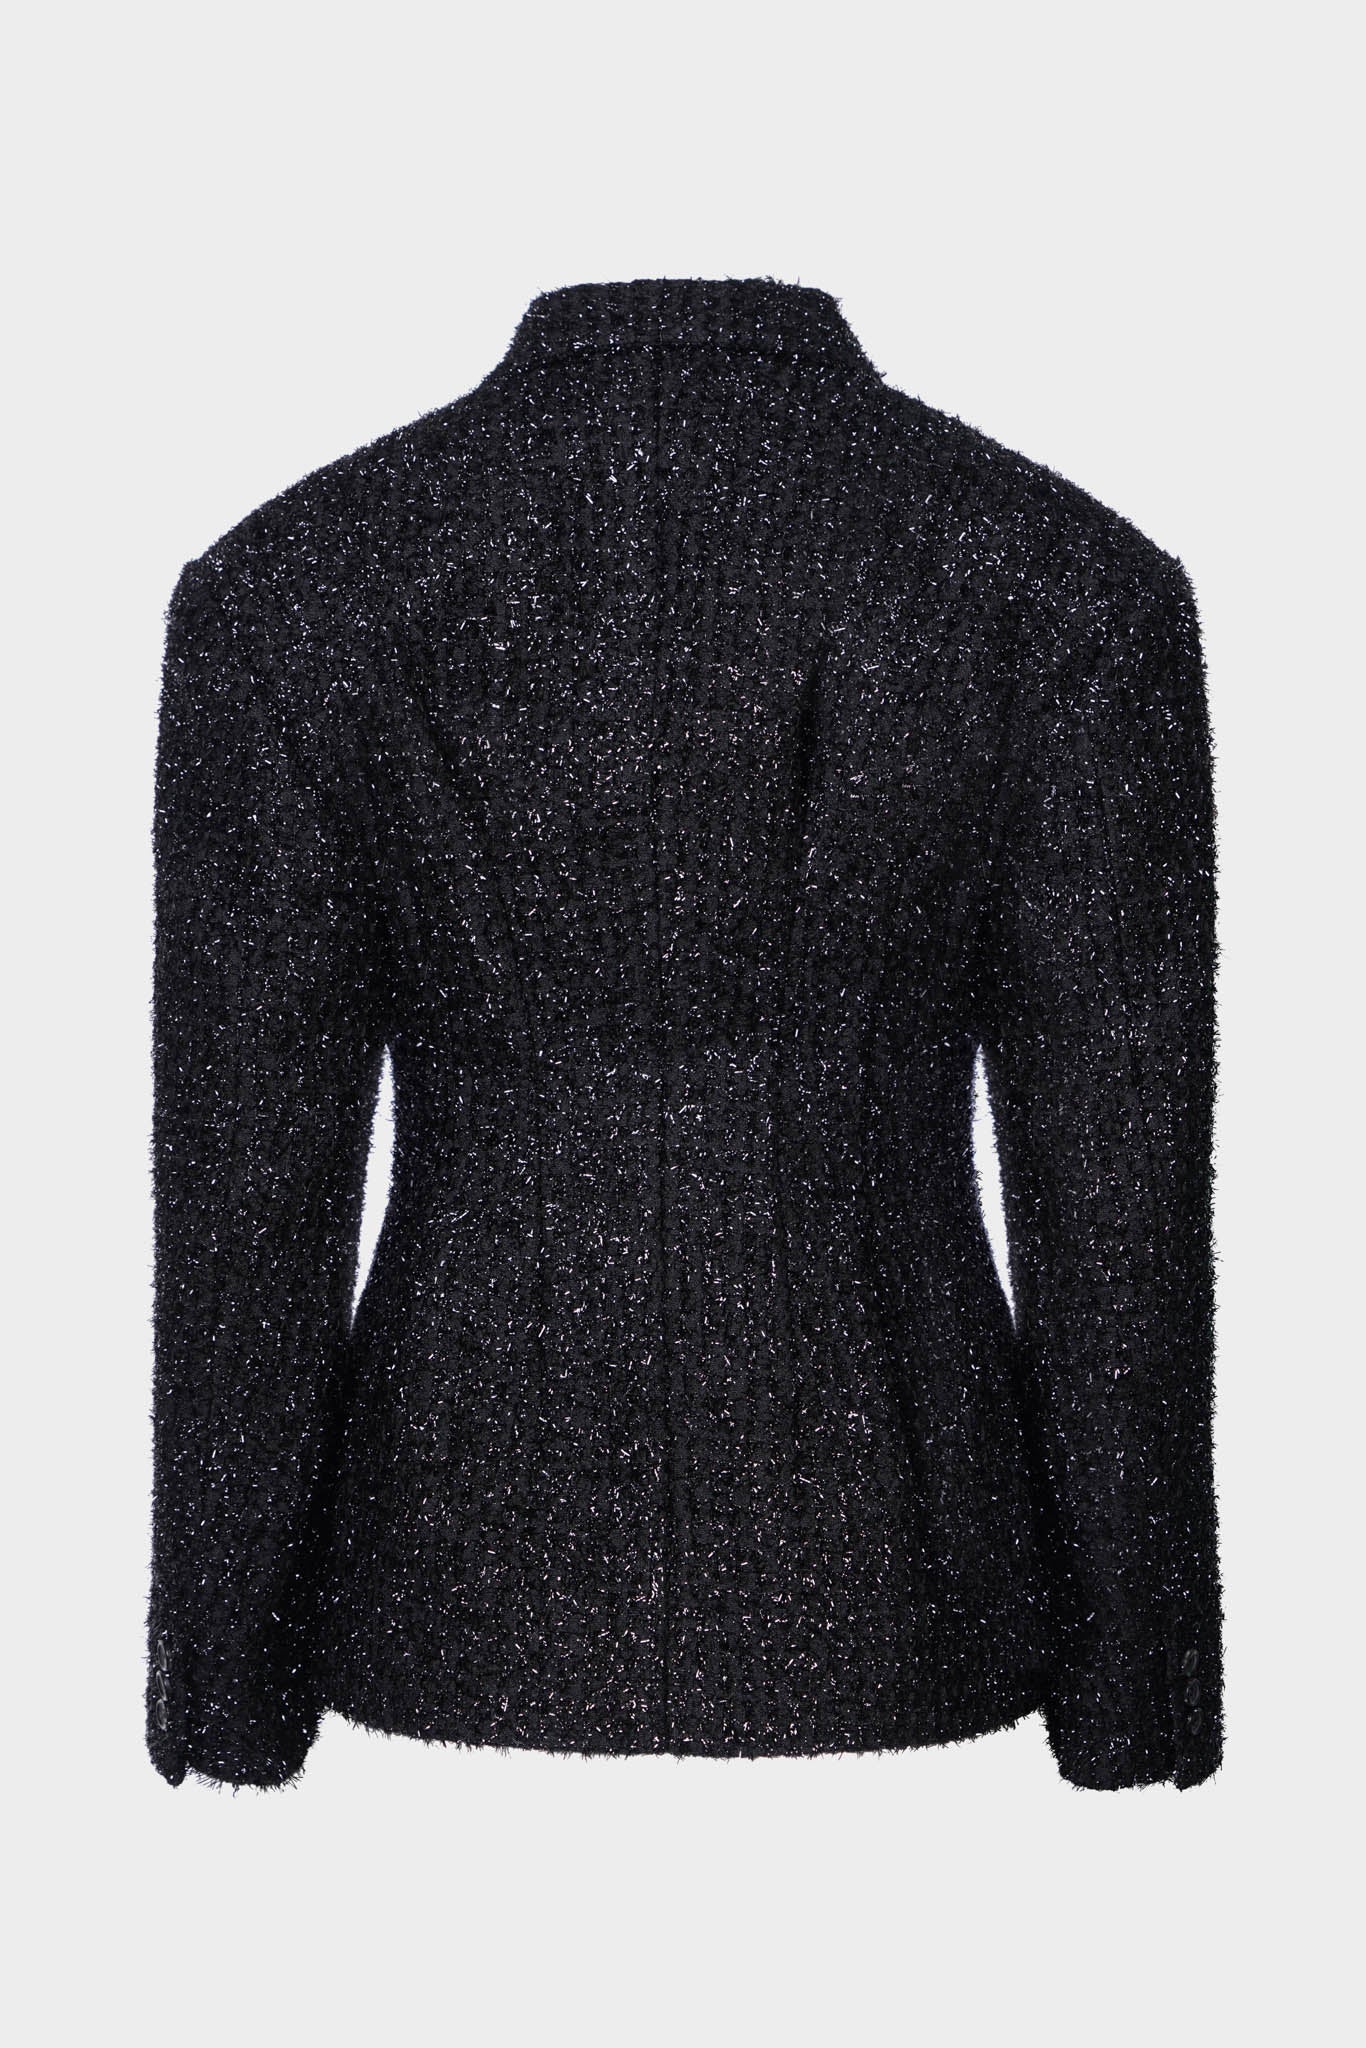 Selectshop FRAME - COMME DES GARÇONS Jacket Outerwear Dubai